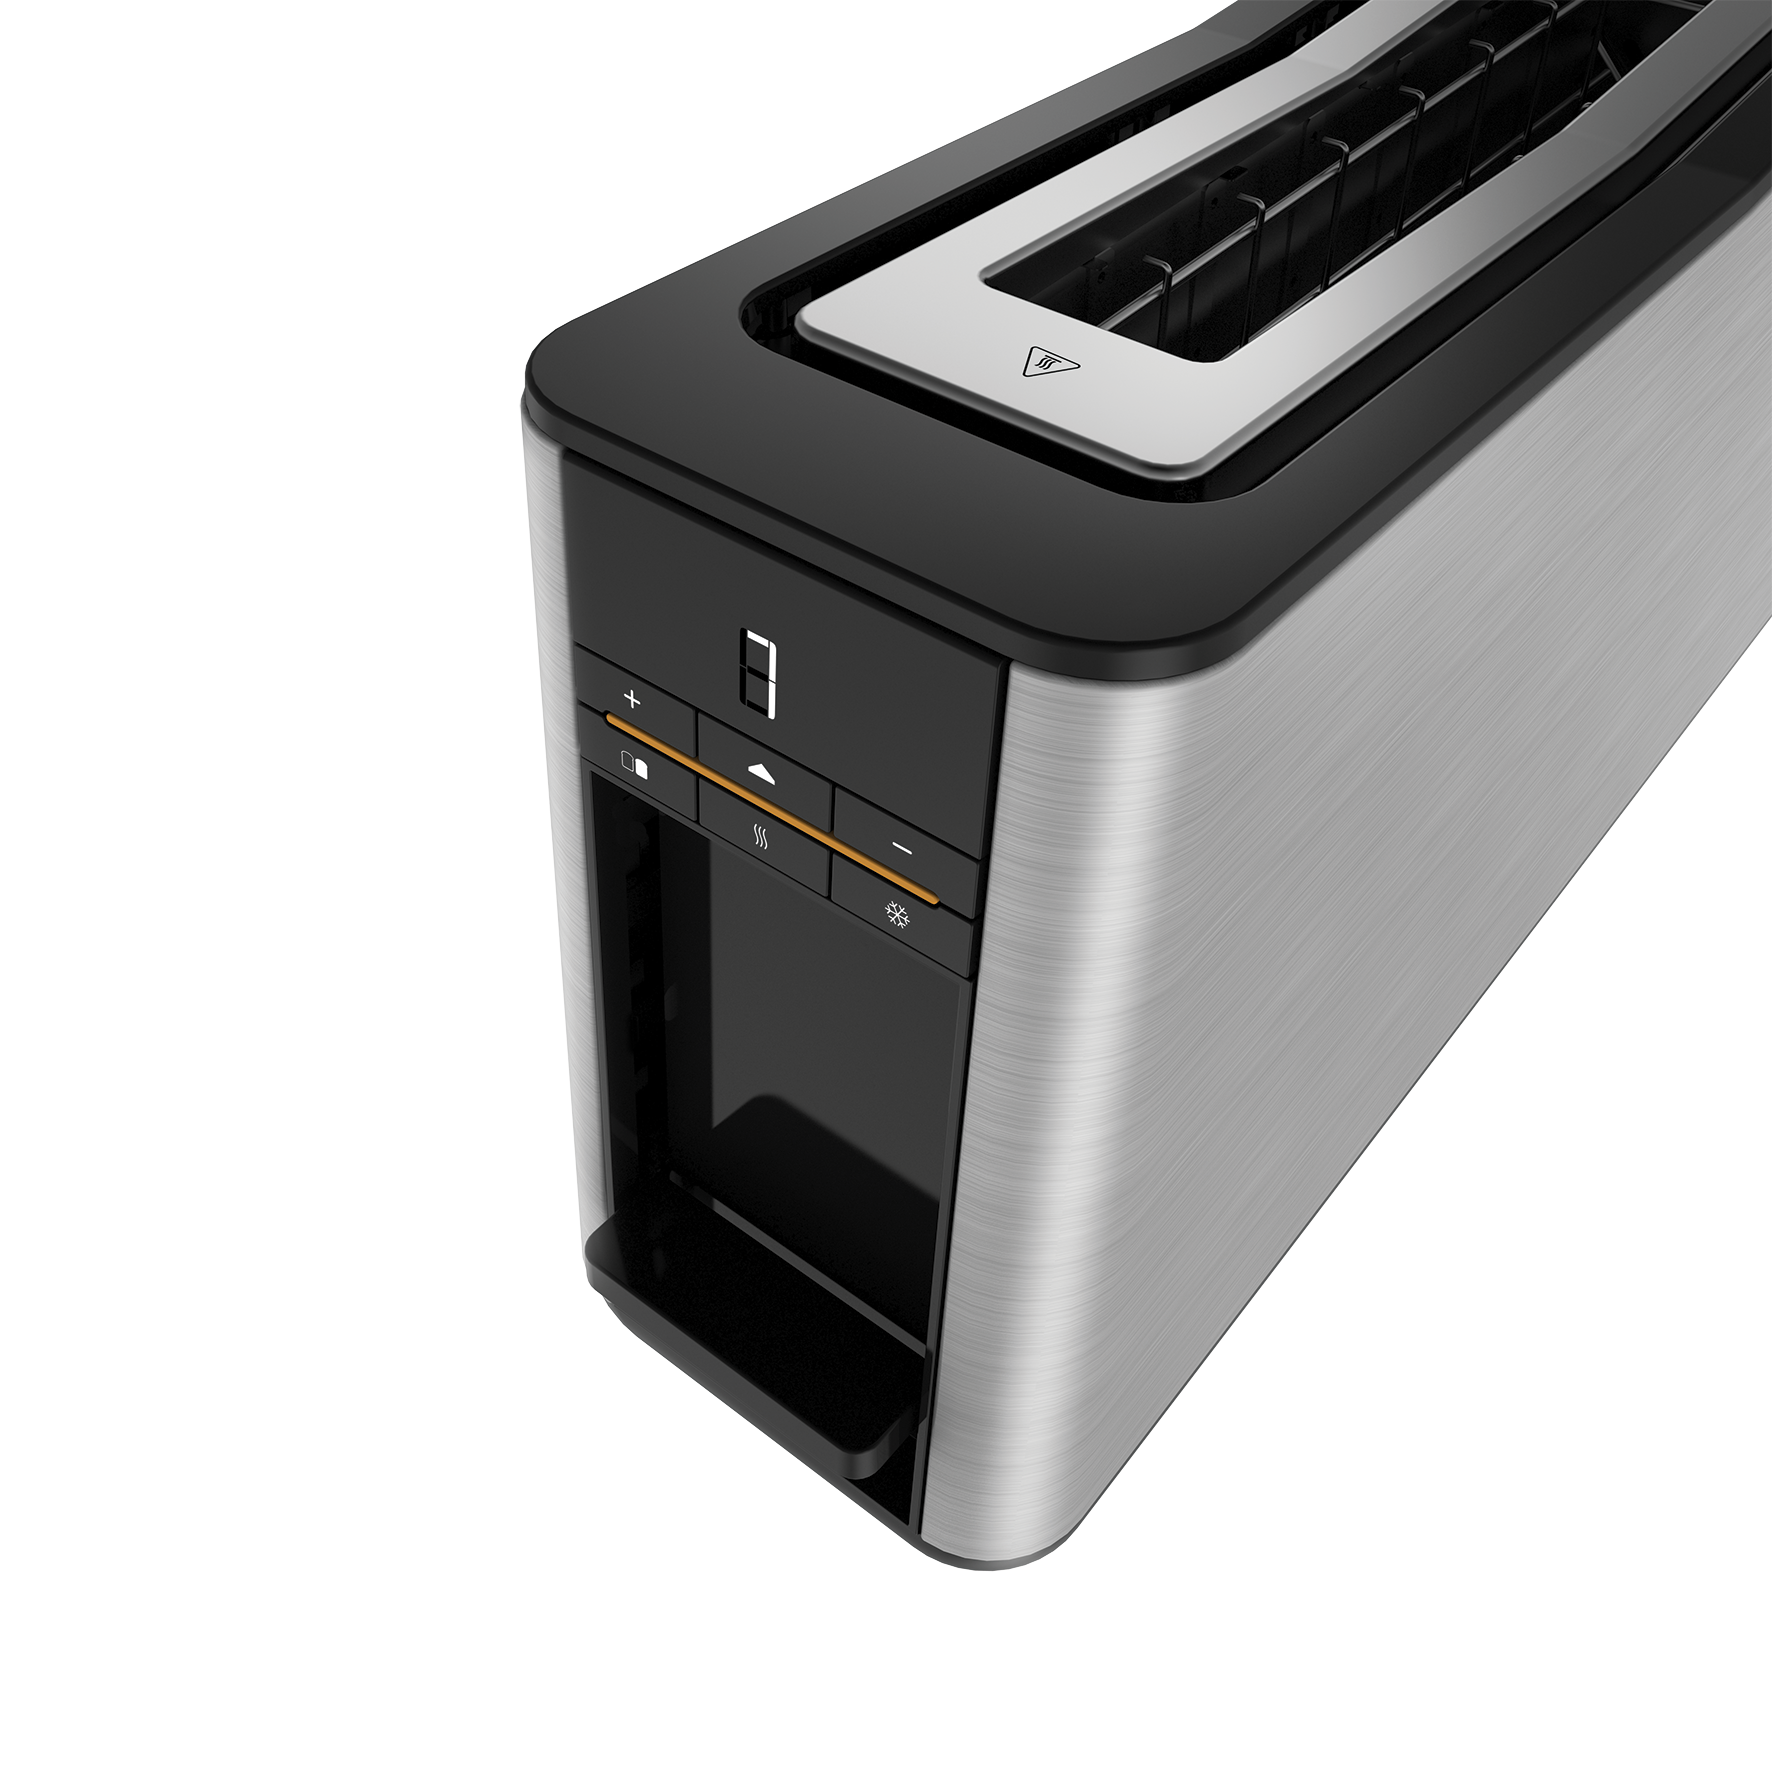 TA 8680-Delisia Toaster-1 long slot